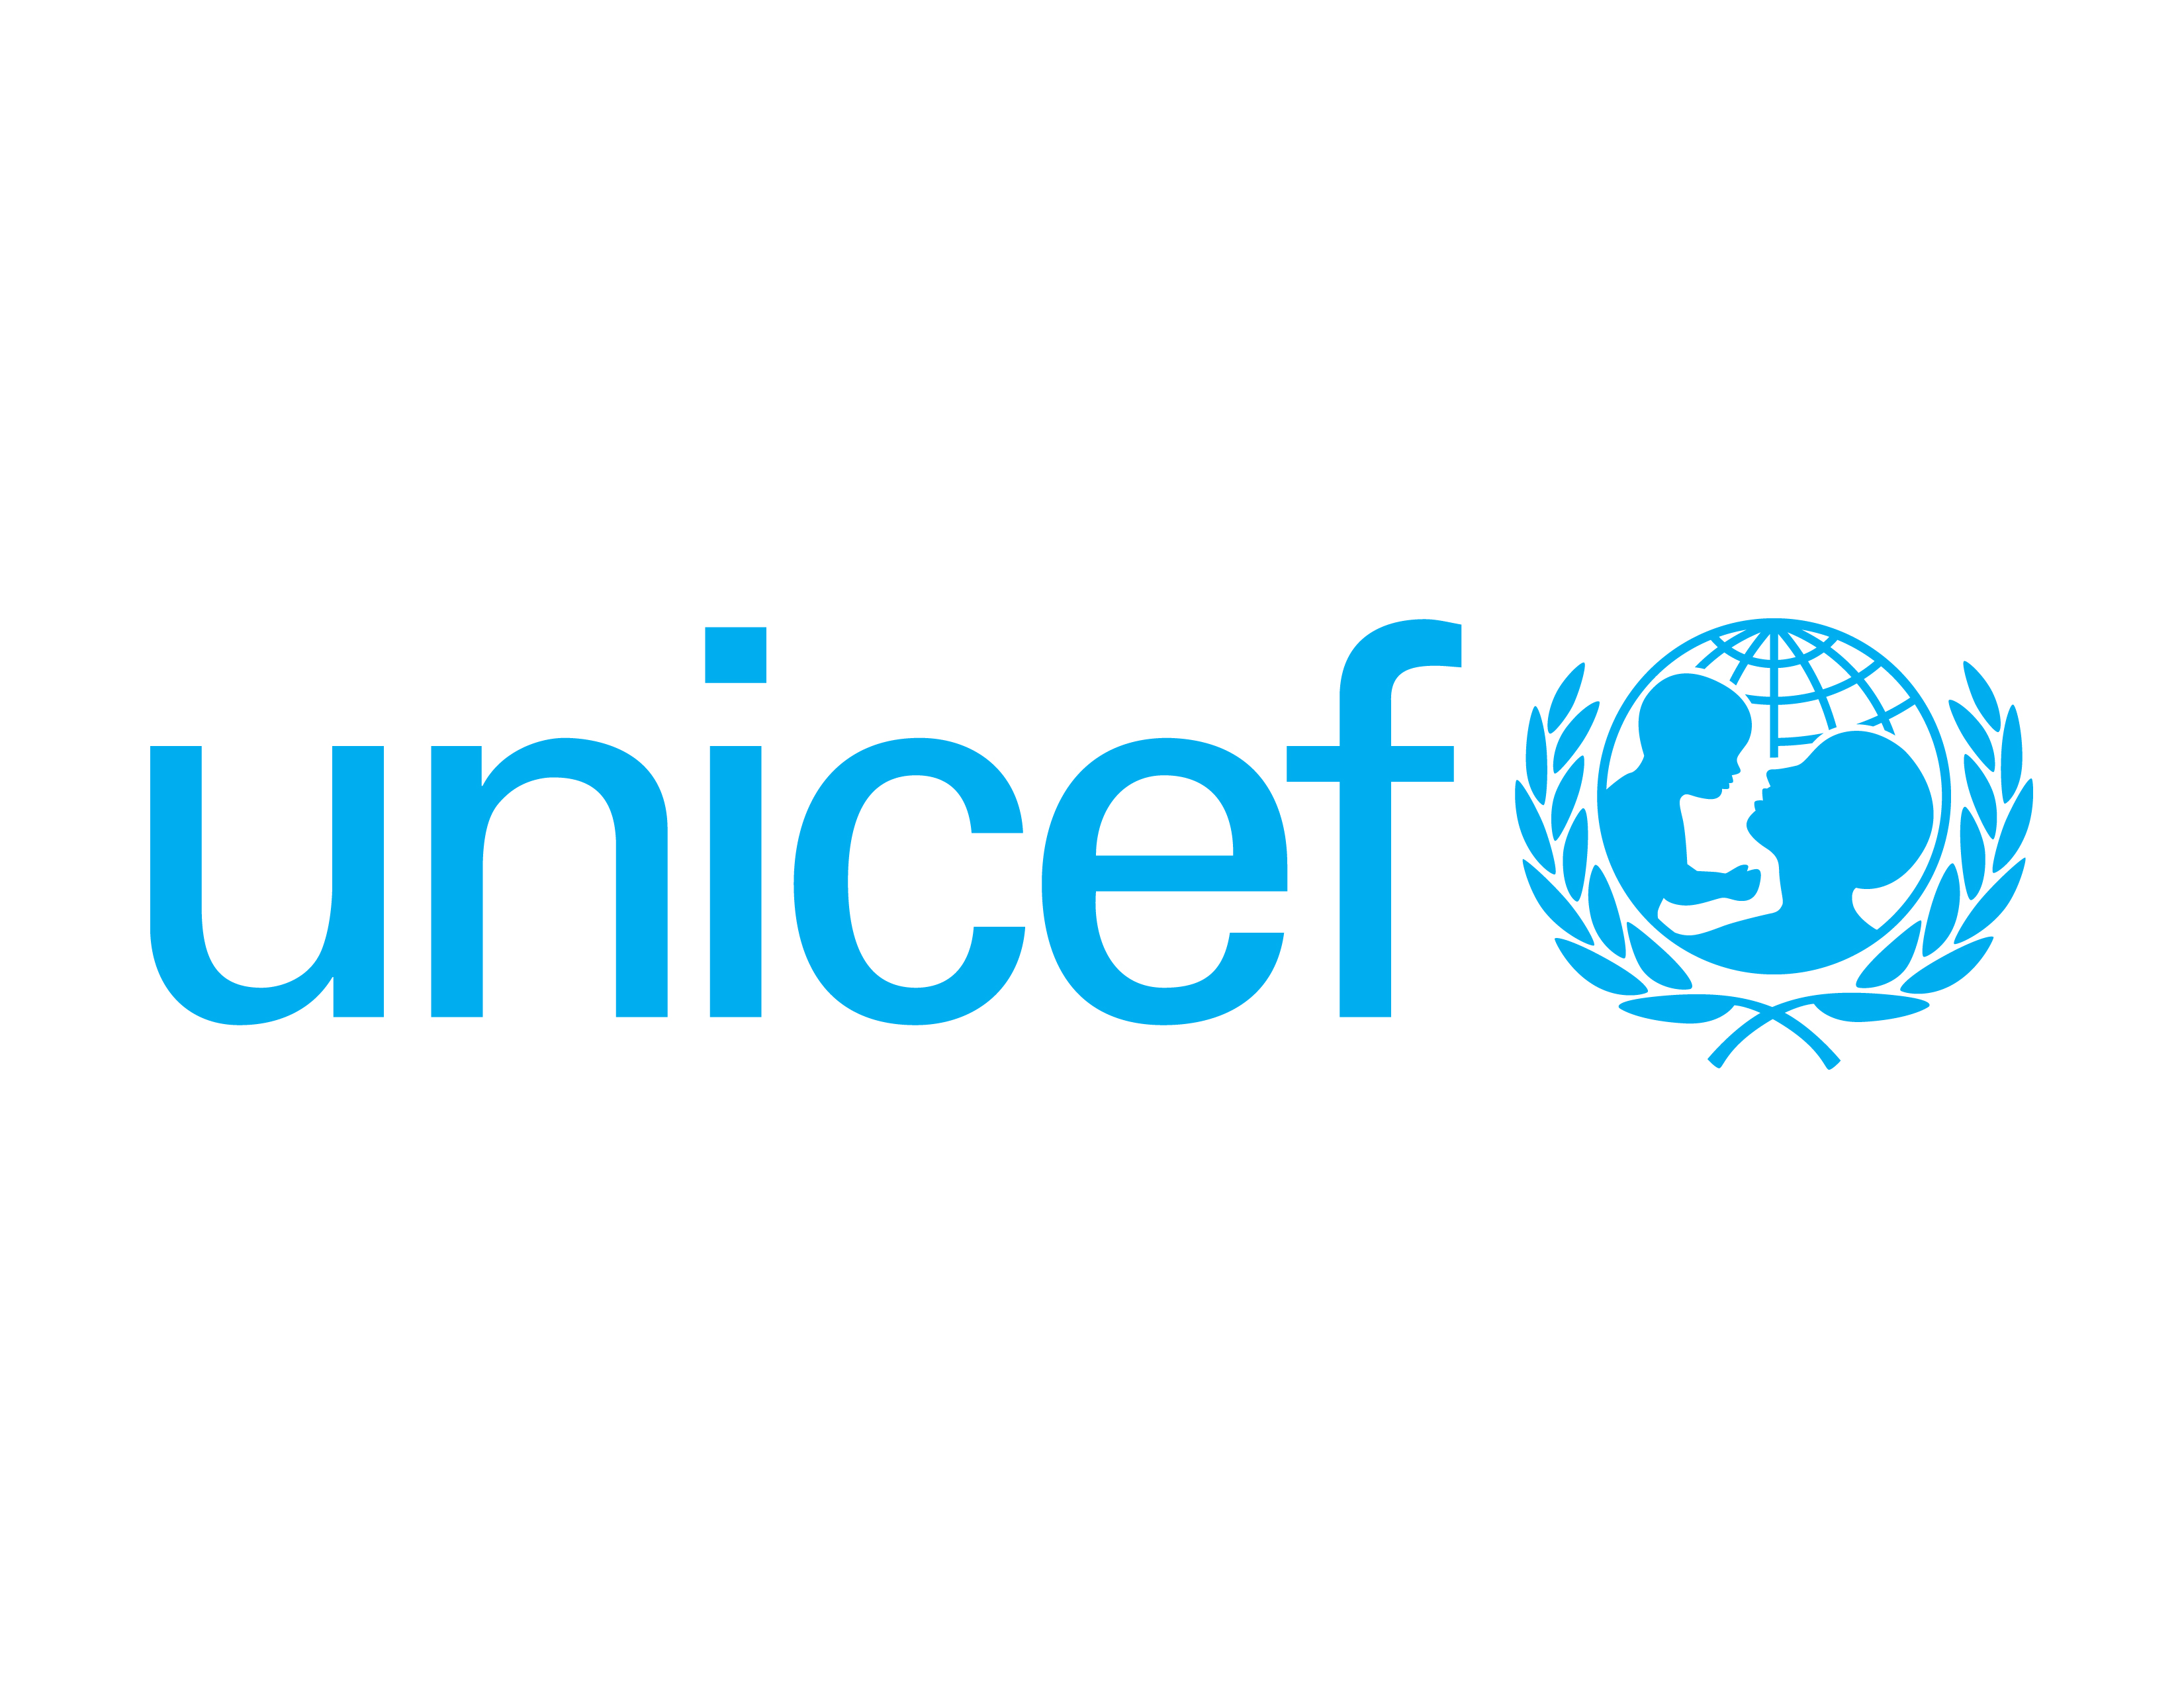 Unicef_logo-2